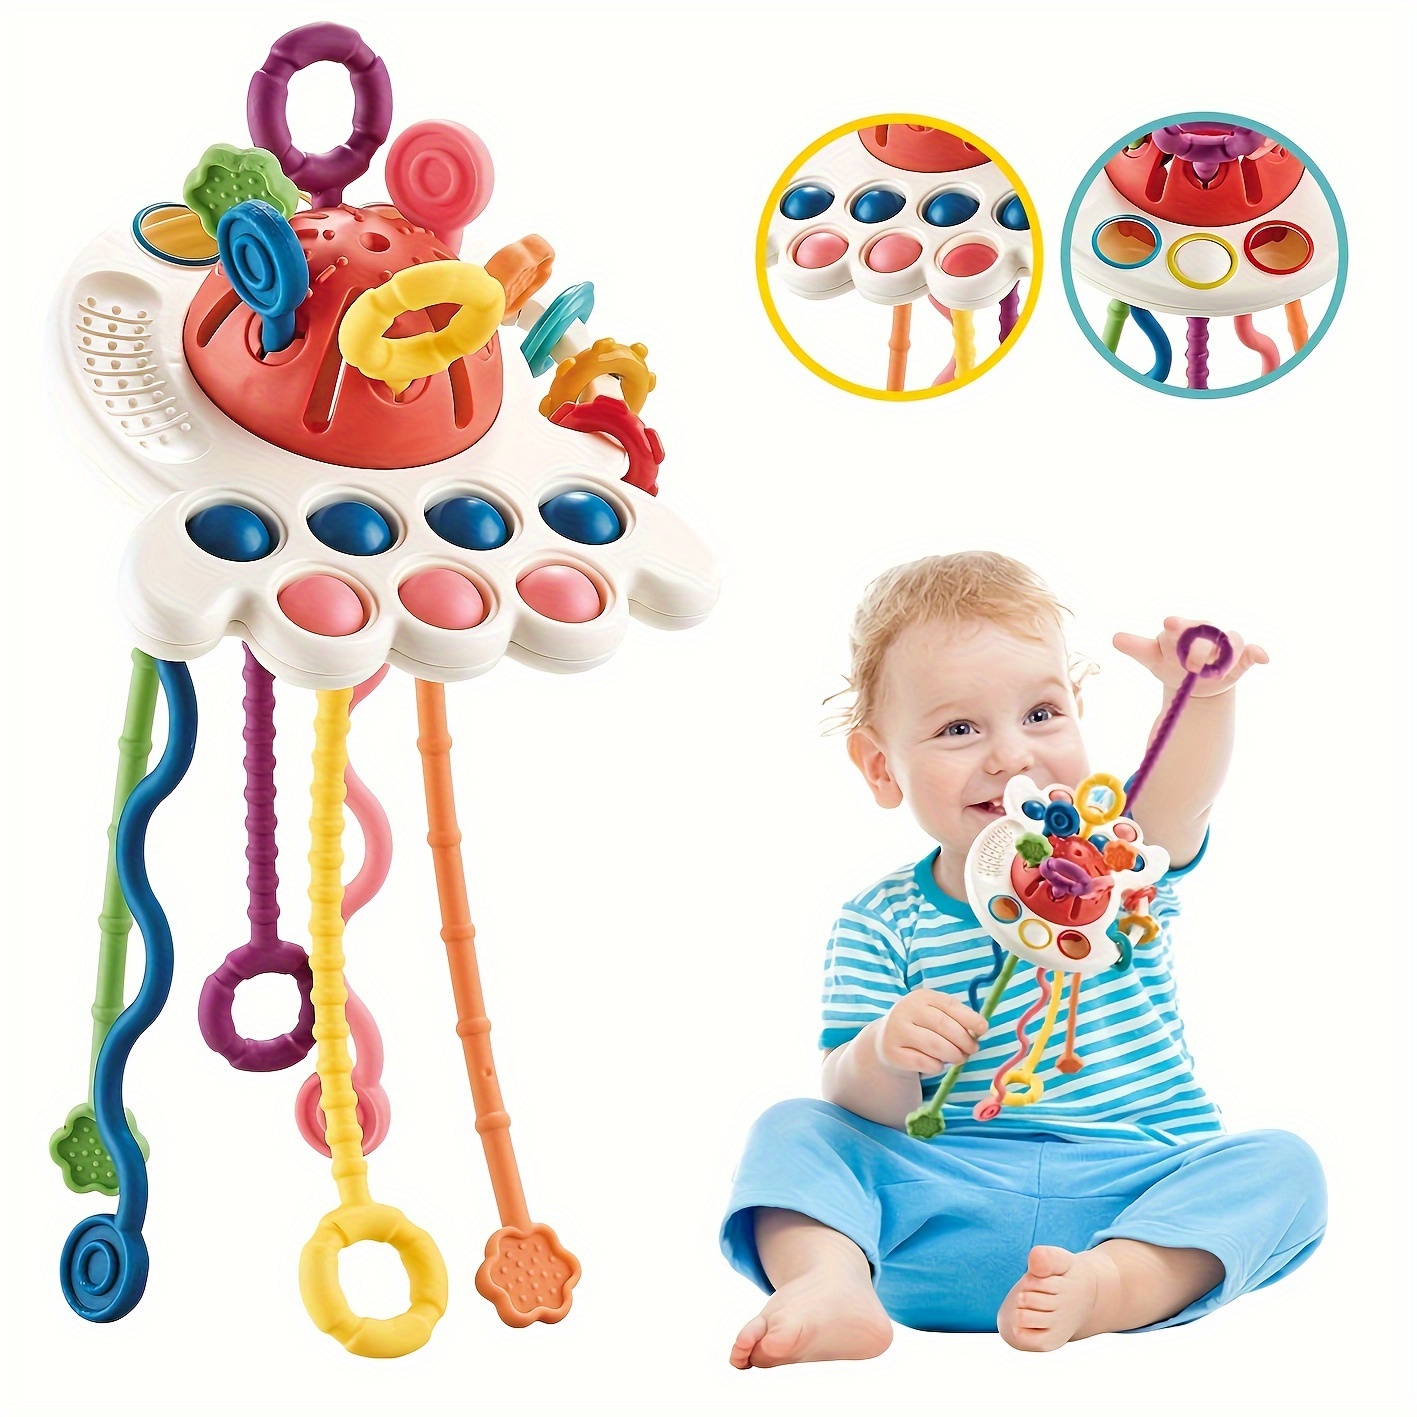  4 juguetes para bebés de 0 a 3 meses, color blanco y negro, de  alto contraste, juguetes Montessori para bebés de 0, 3, 6, 9 meses, juguetes  sensoriales suaves para bebés